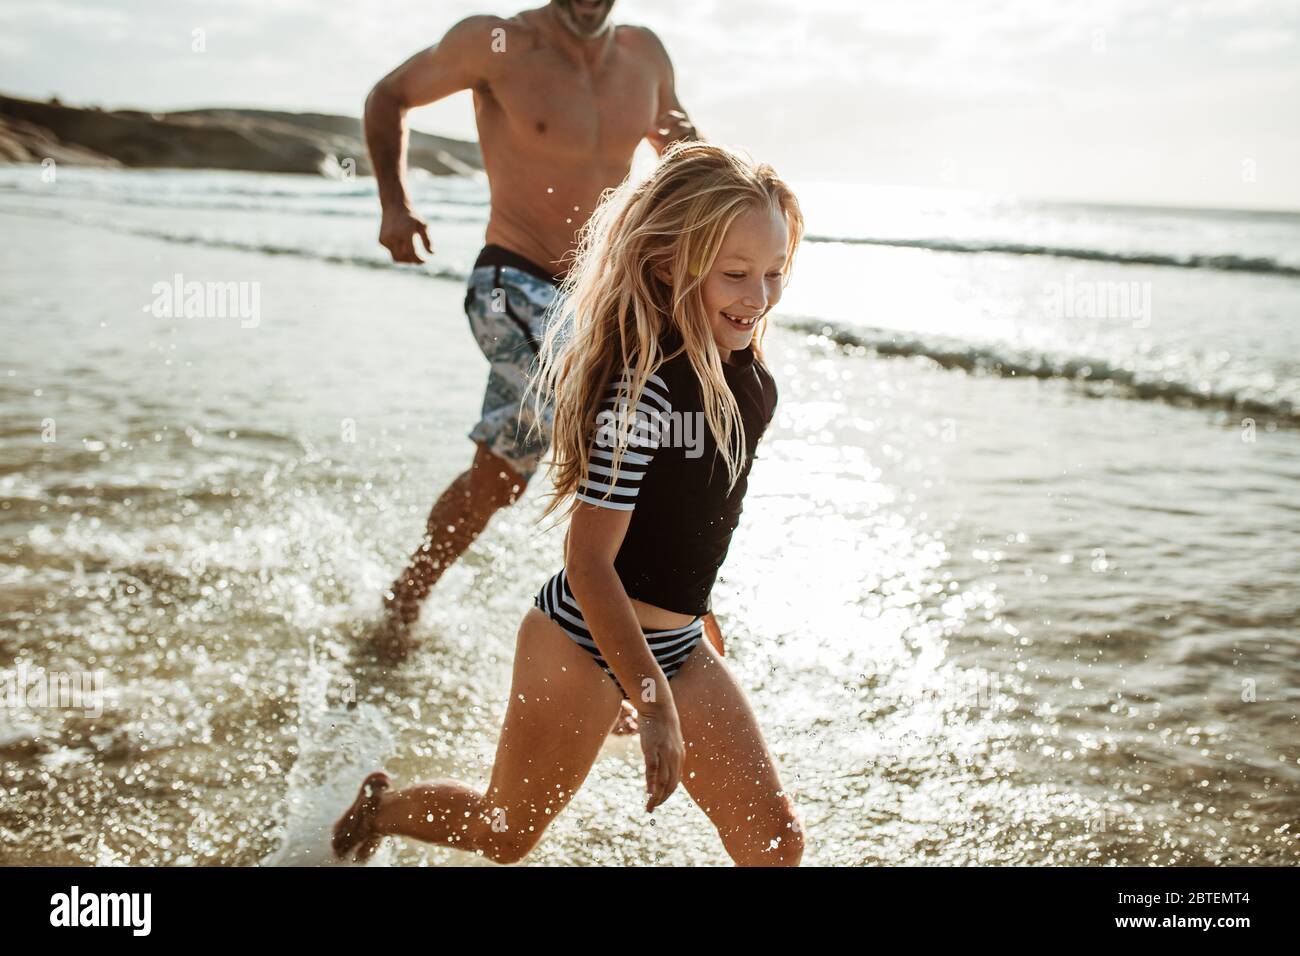 Una chica linda corriendo en el agua con su padre en la playa. Niña jugando en la playa con su padre. Familia disfrutando en la playa. Foto de stock